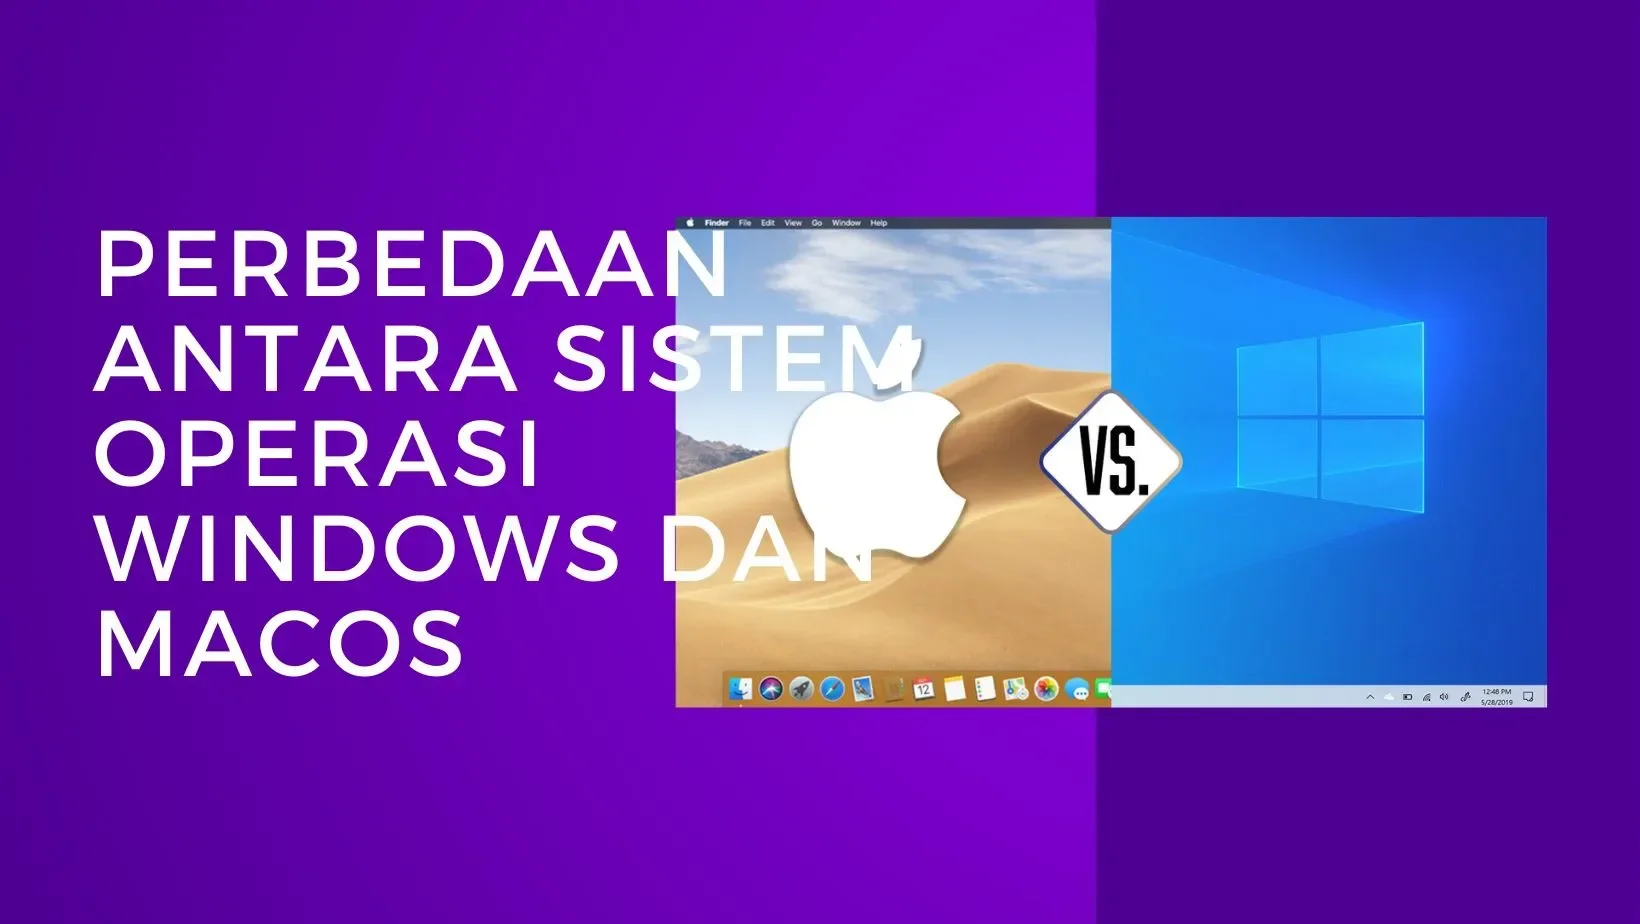 Perbedaan Antara Sistem Operasi Windows dan MacOS